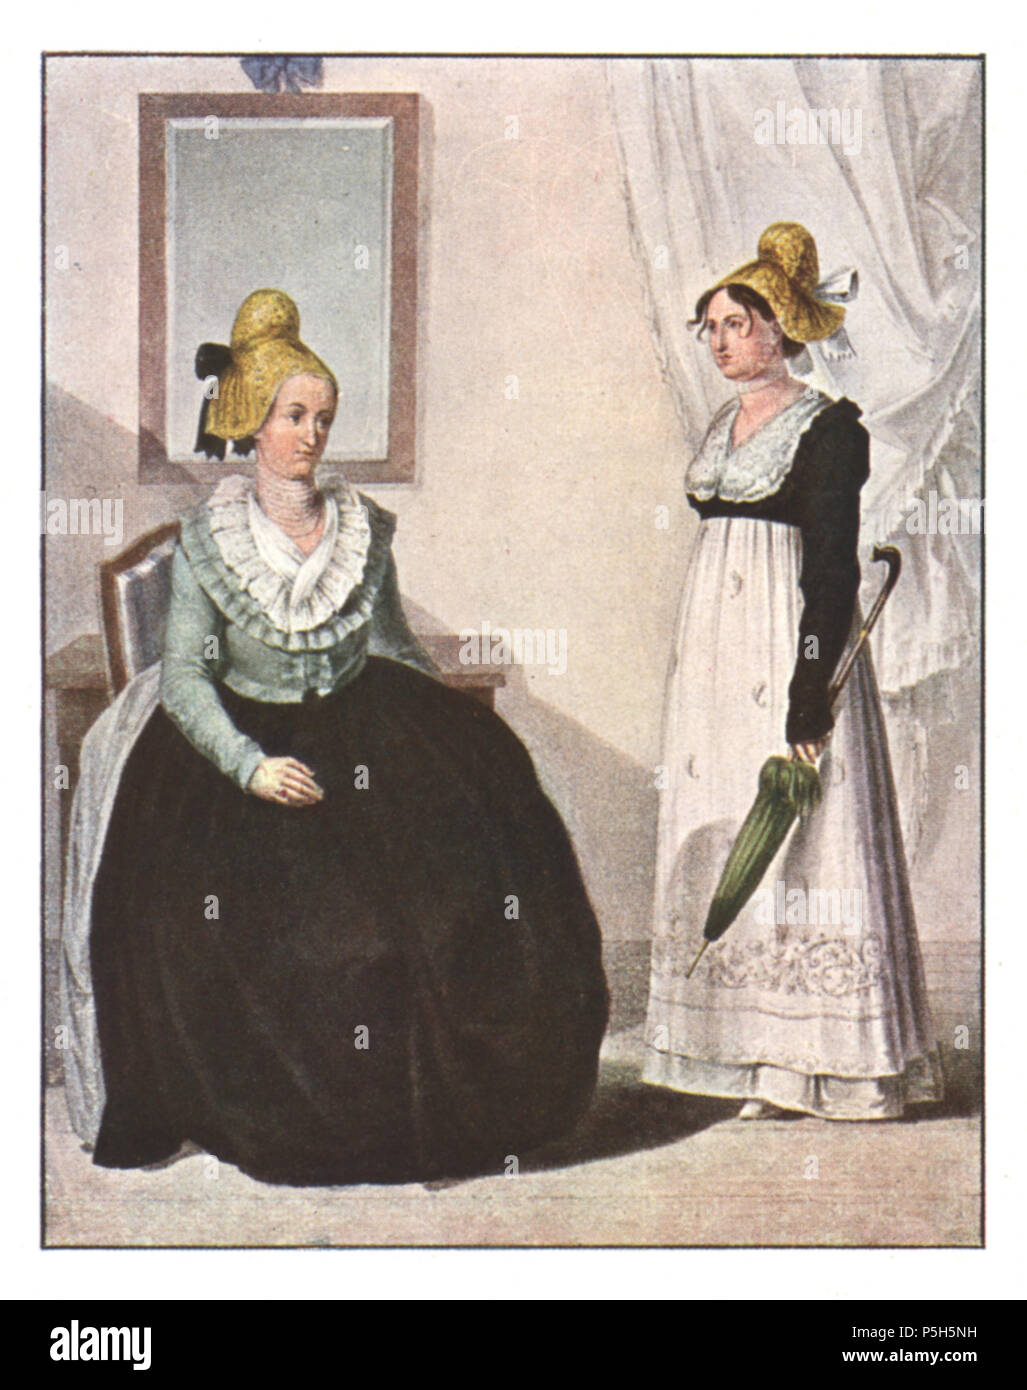 10 051 Bürgersfrauen aus Vordernberg - Aquarell von Karl Ruß - 1811 Stock Photo